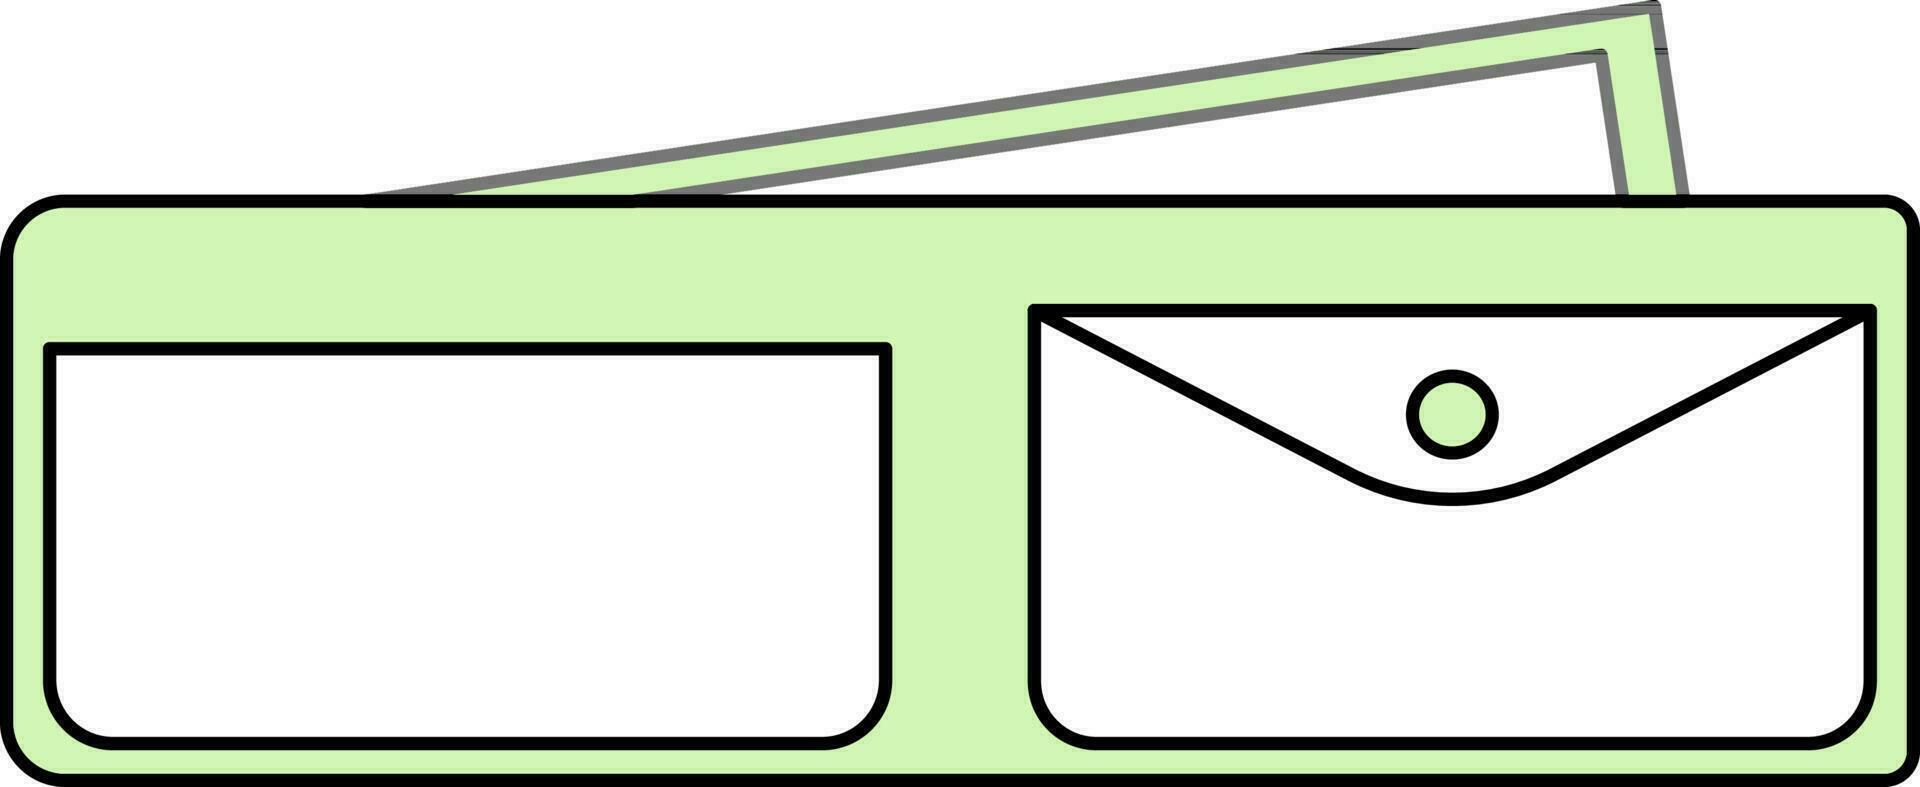 öffnen Brieftasche Symbol im Grün und Weiß Farbe. vektor